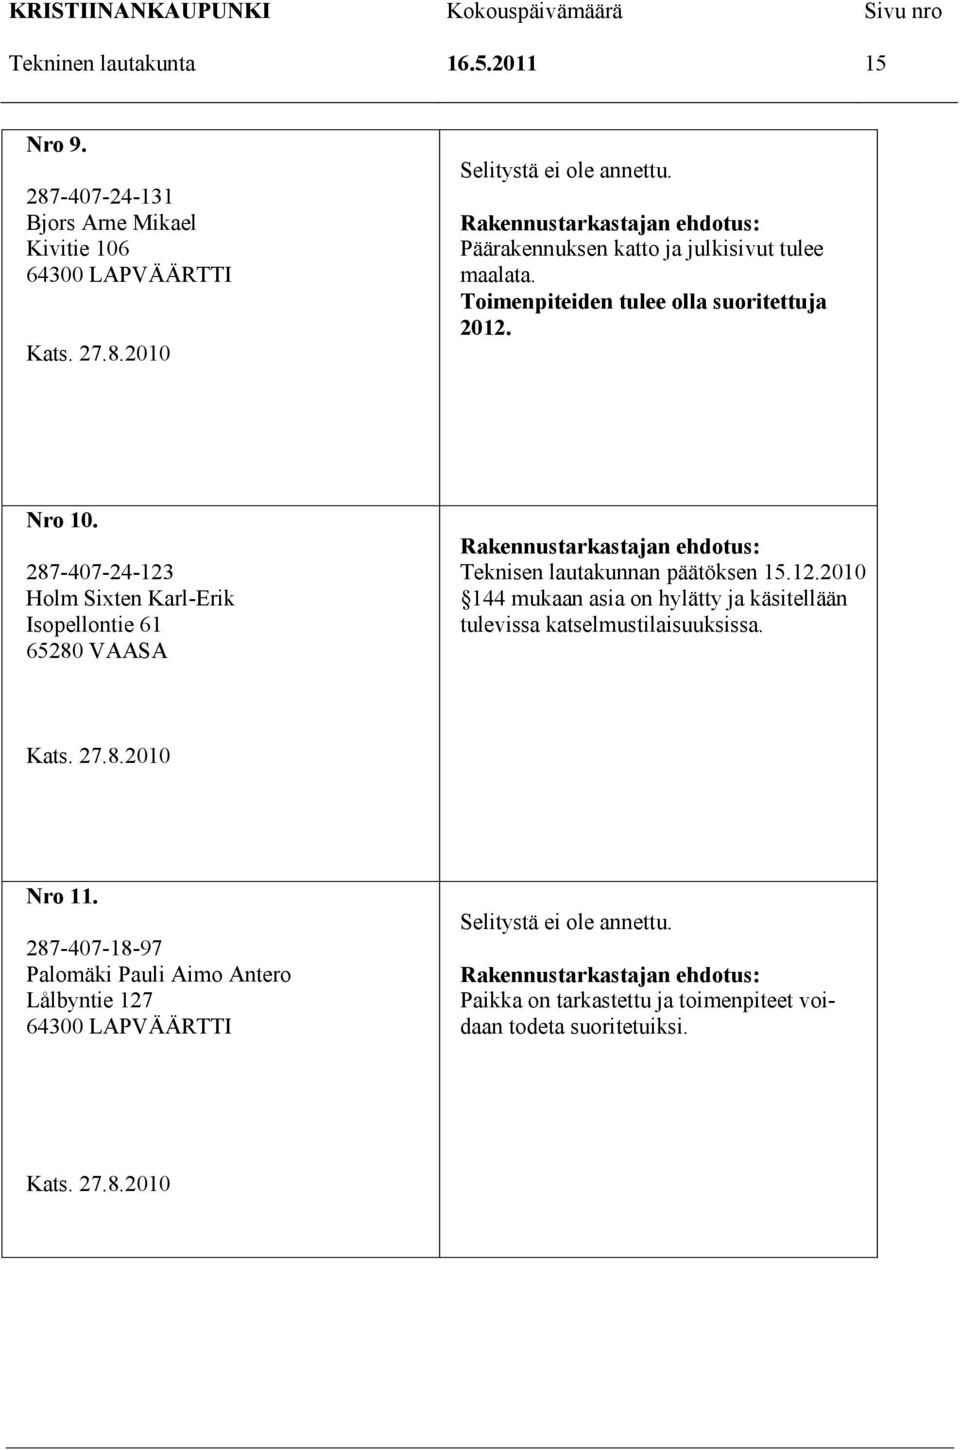 287-407-24-123 Holm Sixten Karl-Erik Isopellontie 61 65280 VAASA Teknisen lautakunnan päätöksen 15.12.2010 144 mukaan asia on hylätty ja käsitellään tulevissa katselmustilaisuuksissa.